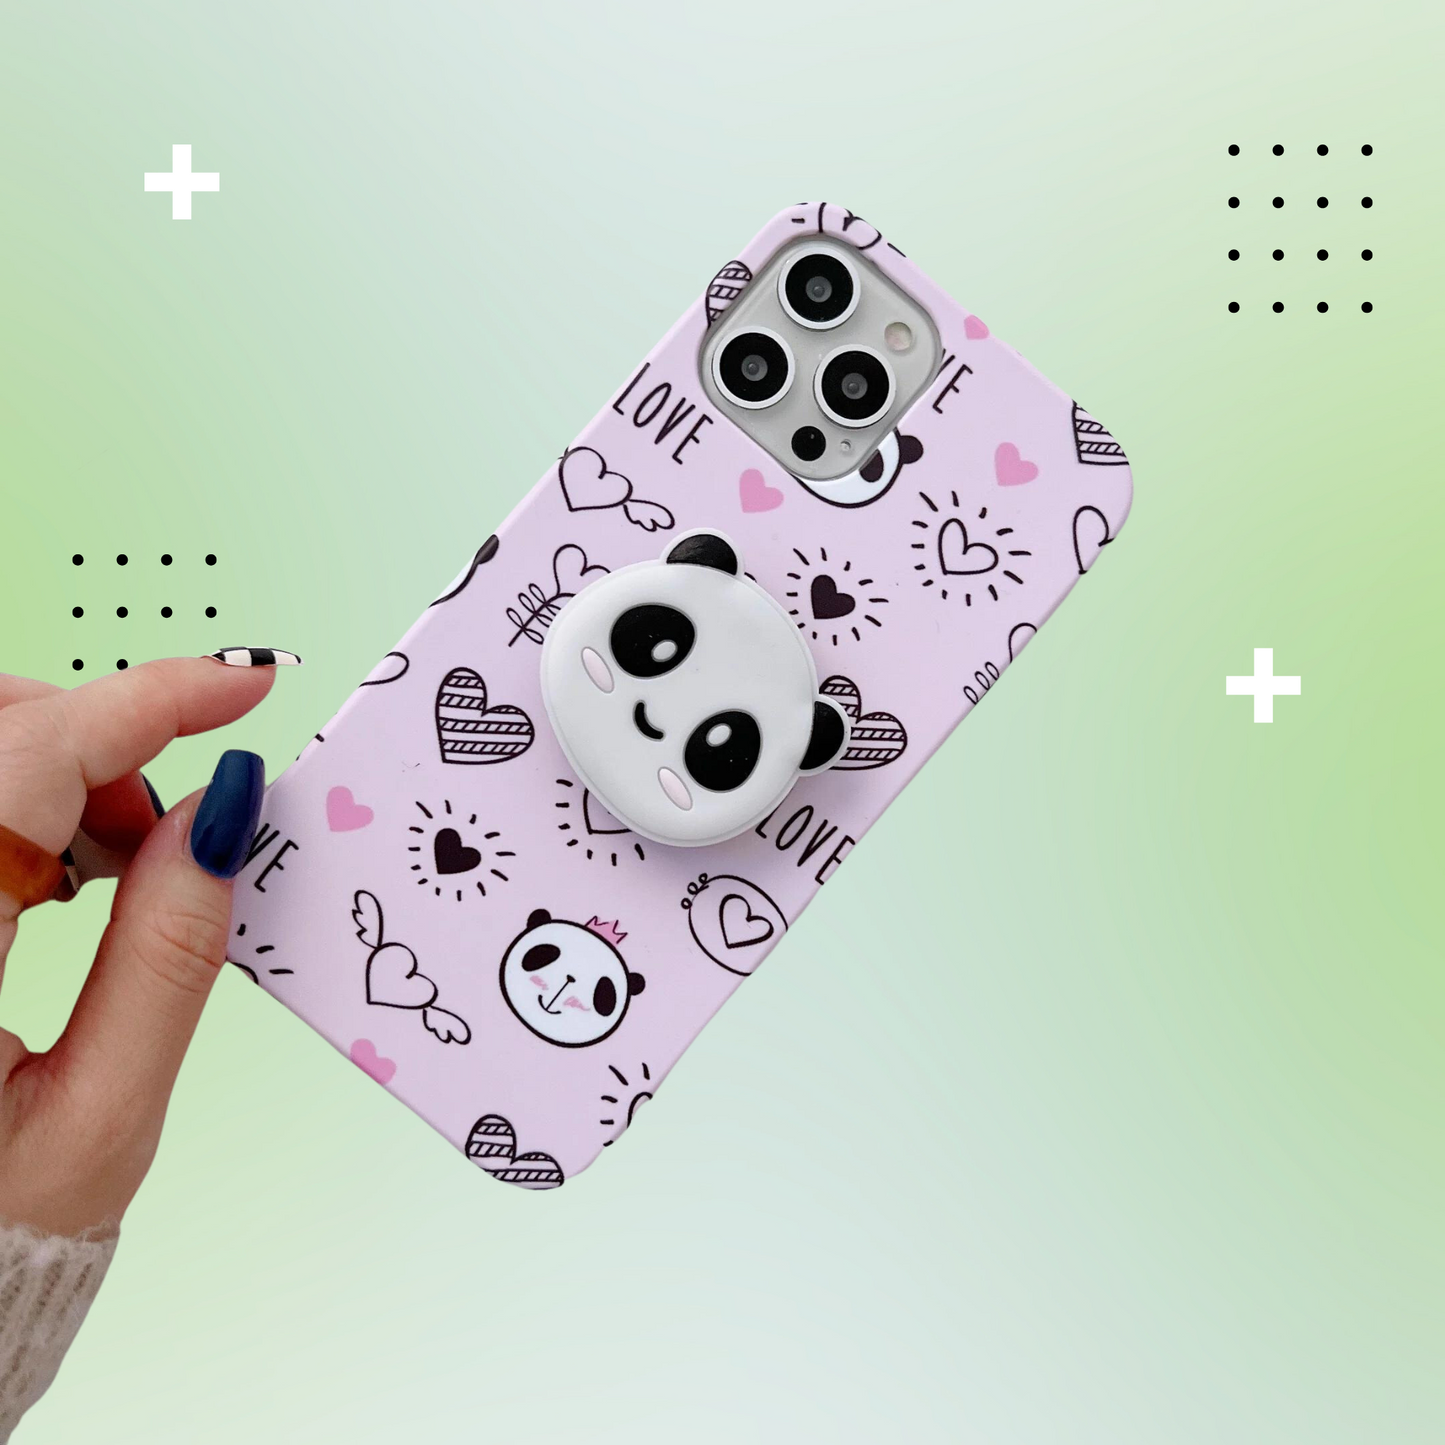 Cute Panda Slim Phone Case Cover ShopOnCliQ